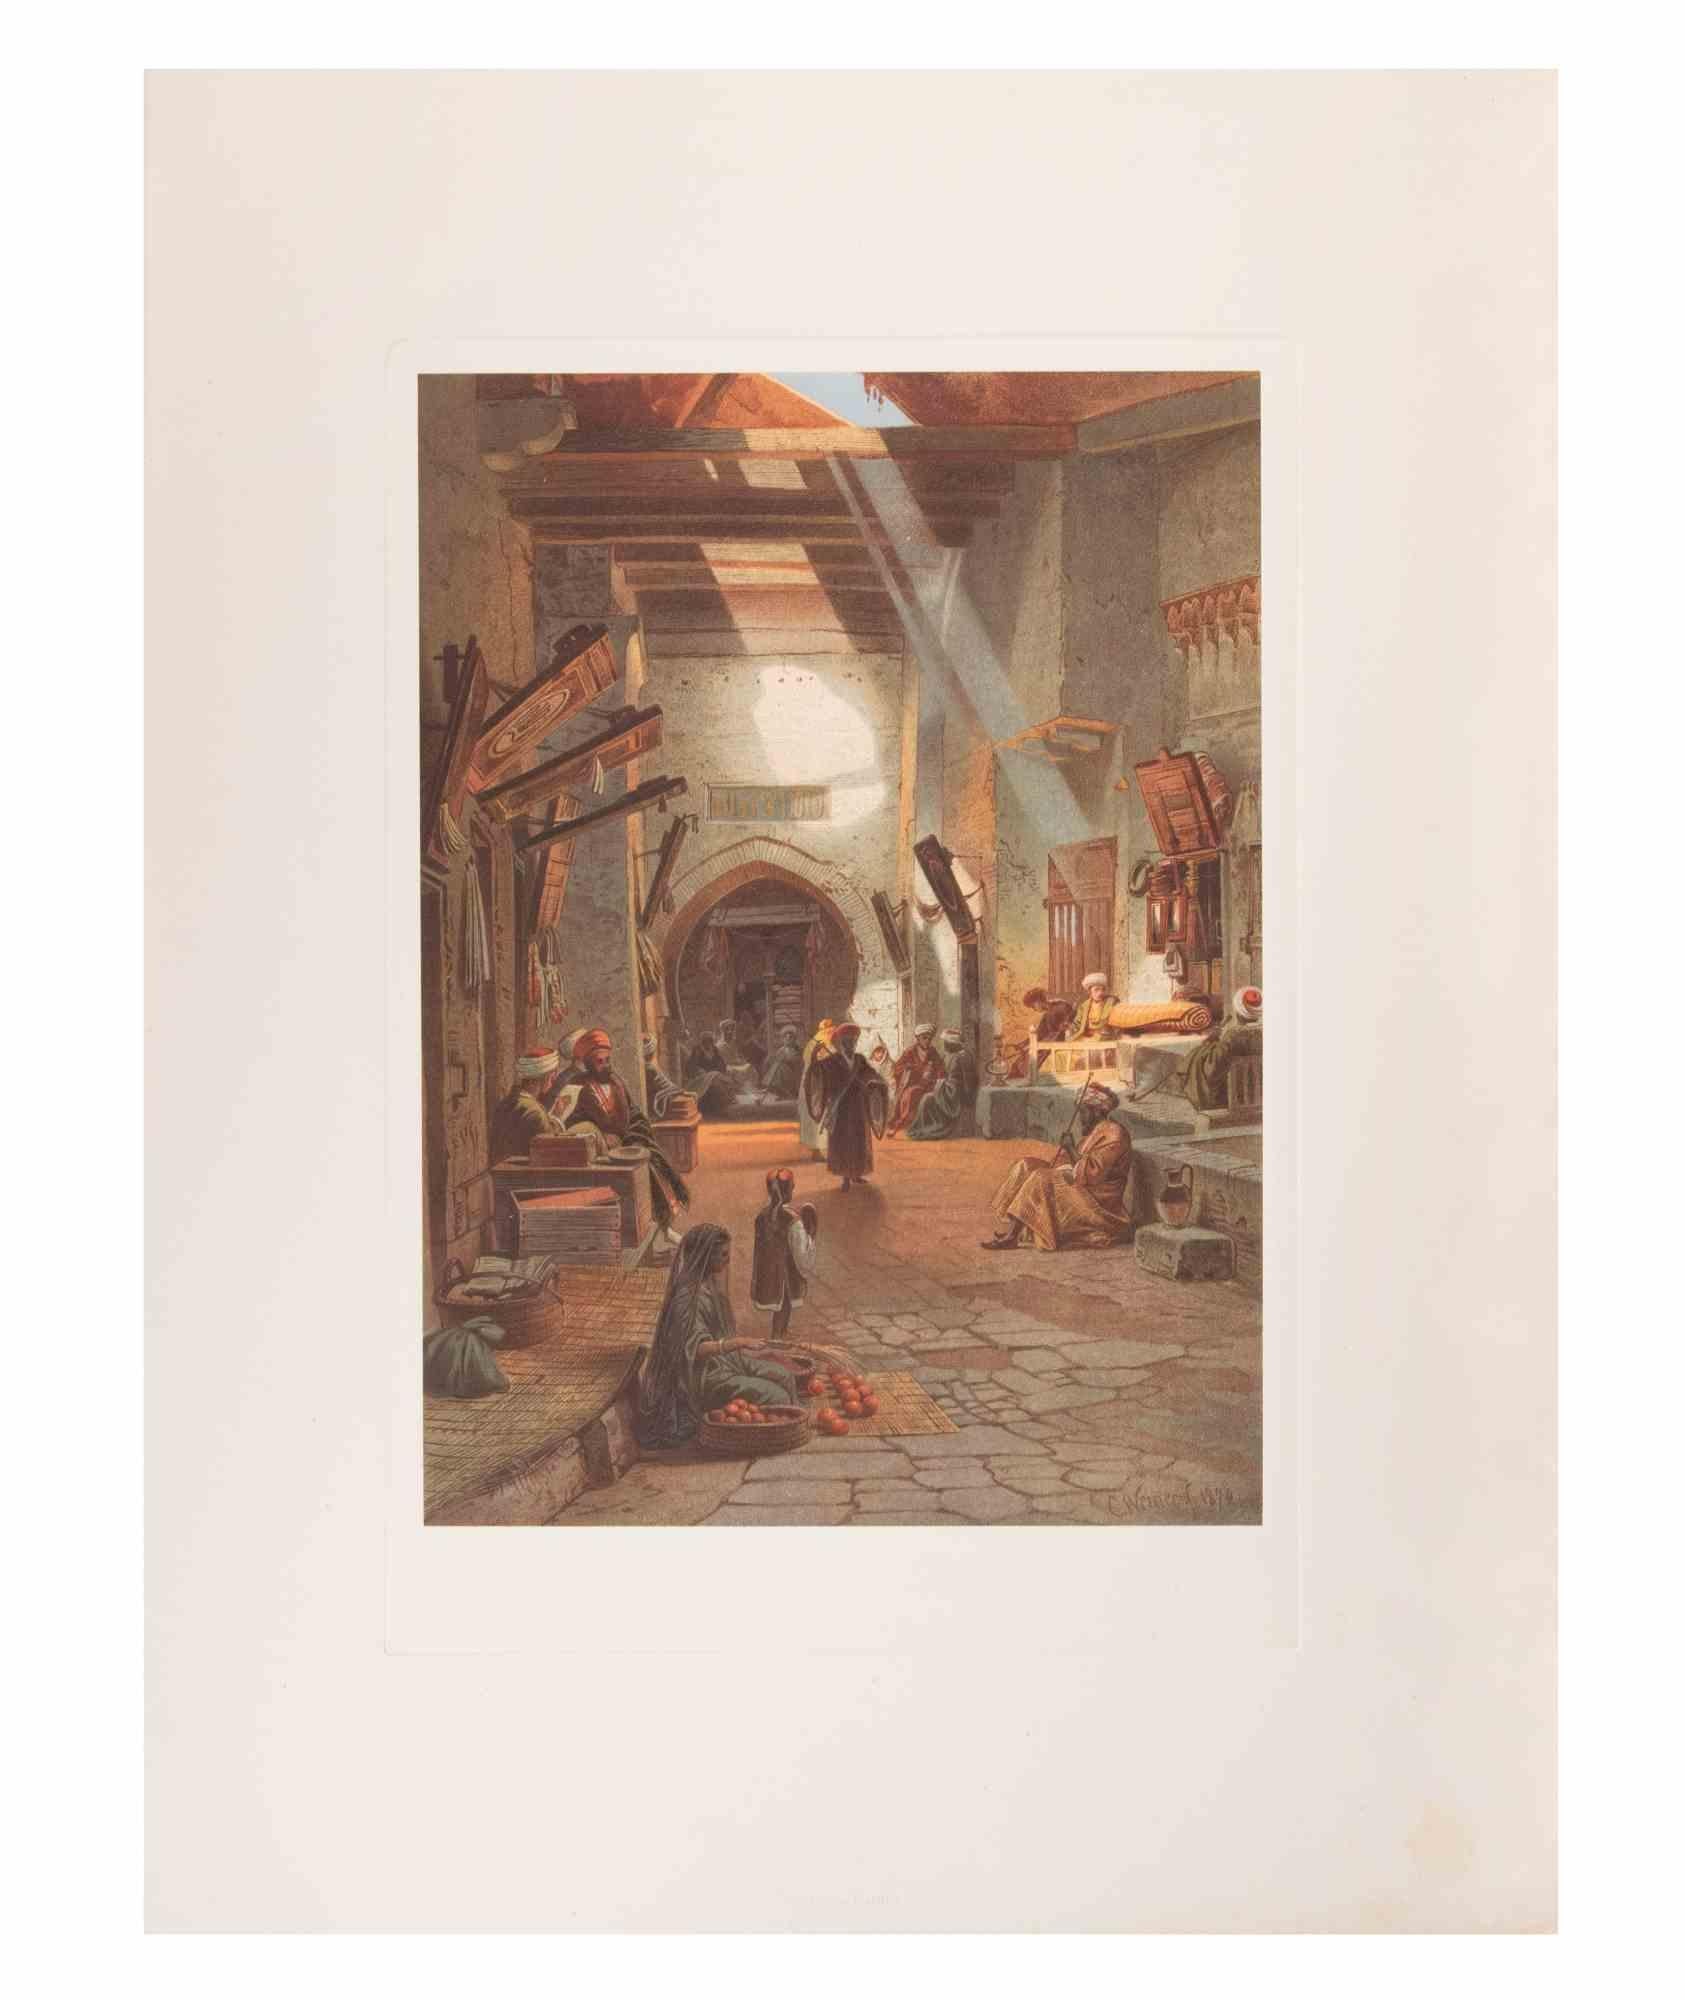 Suk ist ein modernes Kunstwerk, realisiert d'apres Karl Werner 

Gemischtfarbige Chromolithographie. 

Das Werk ist nach einem Aquarell gestaltet, das der Künstler während einer Reise nach Ägypten zwischen 1862 und 1865 anfertigte.

Die vorliegende